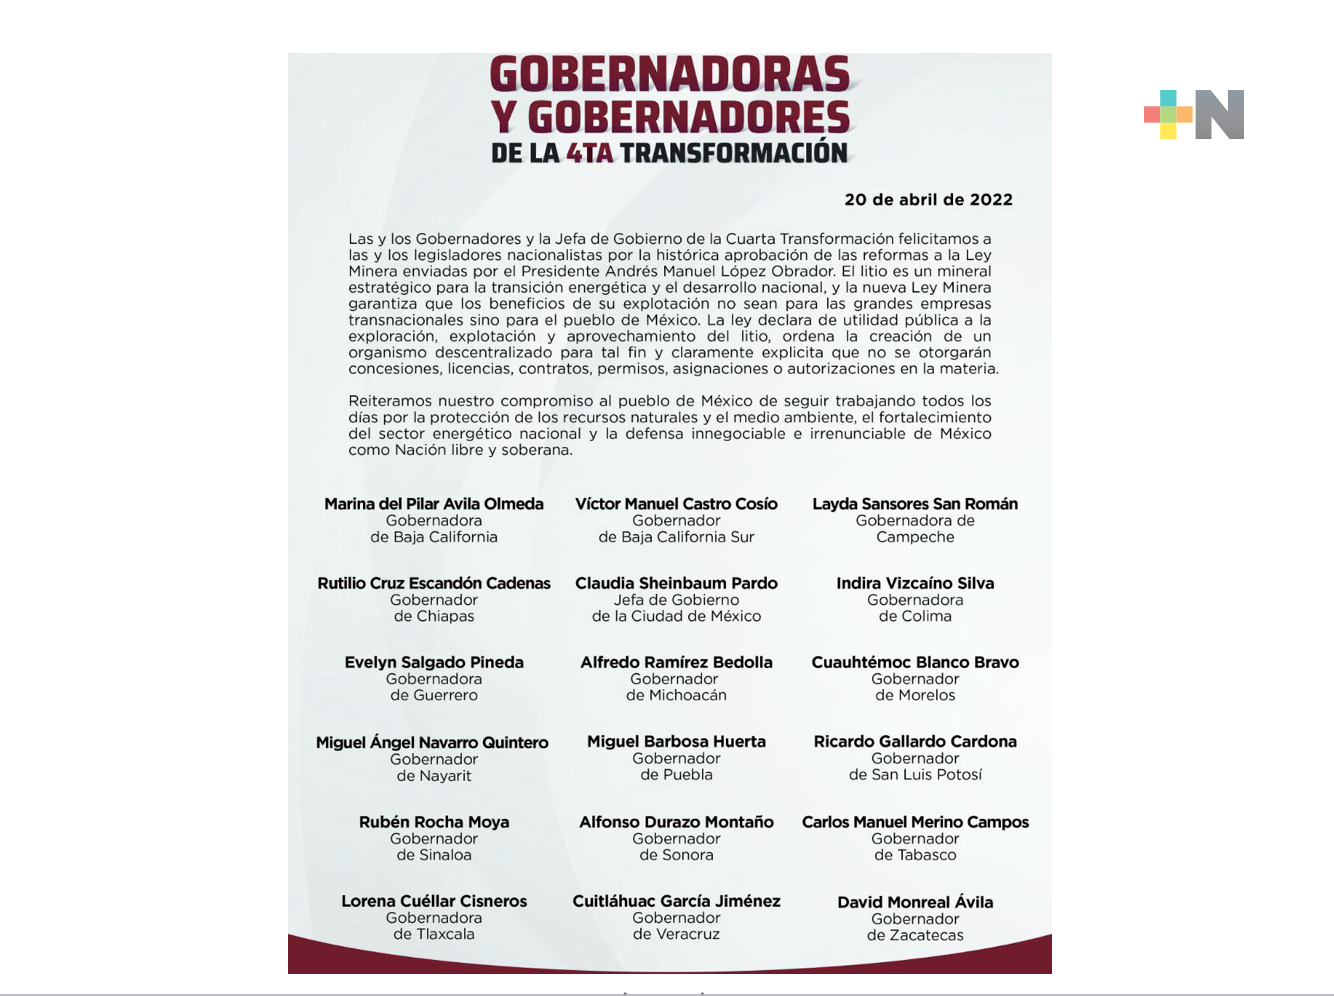 La mayoría de gobernadores del país apoyamos la Ley Minera del presidente López Obrador: Cuitláhuac García